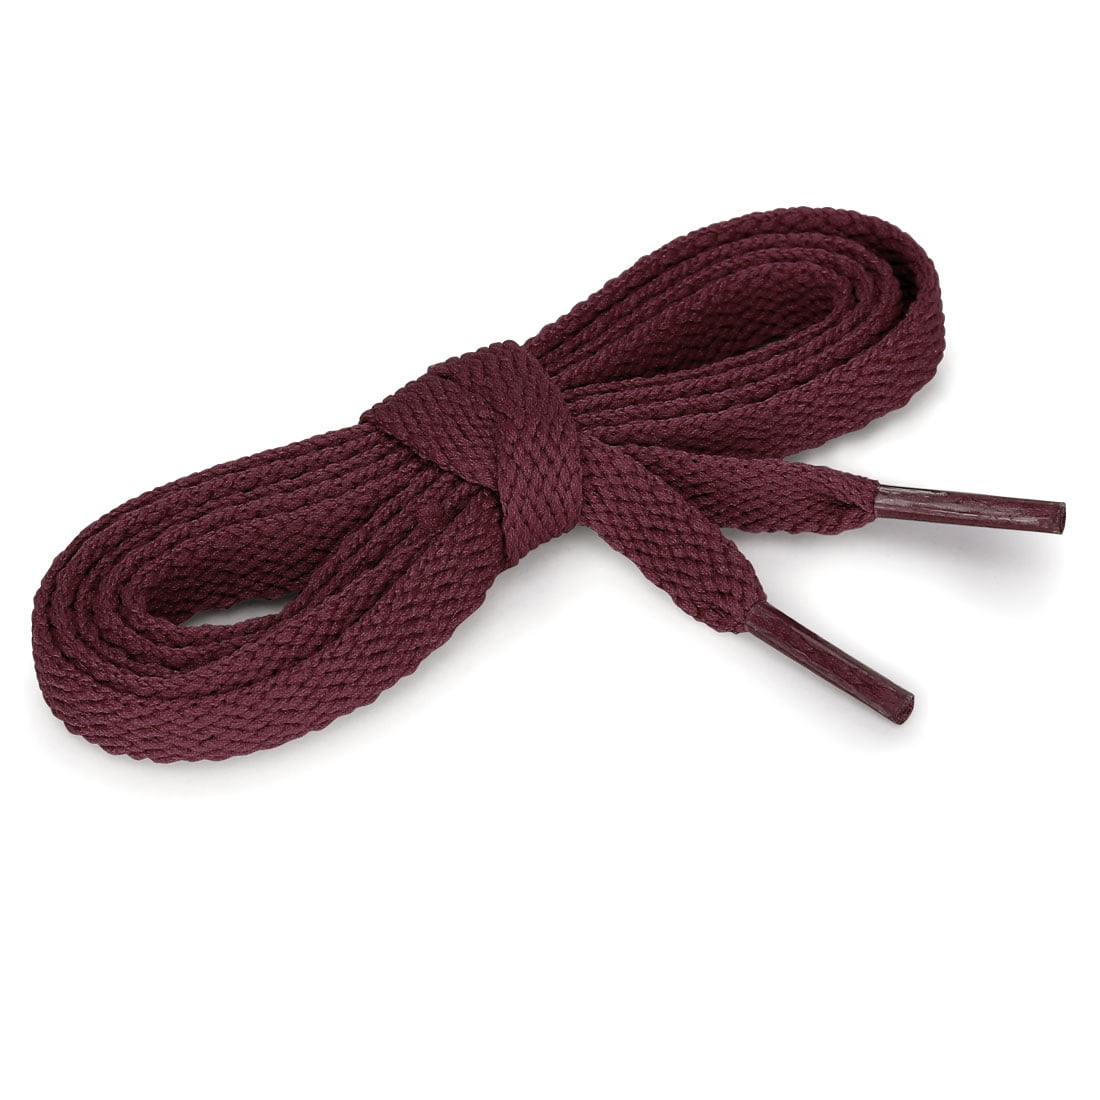 burgundy flat shoelaces